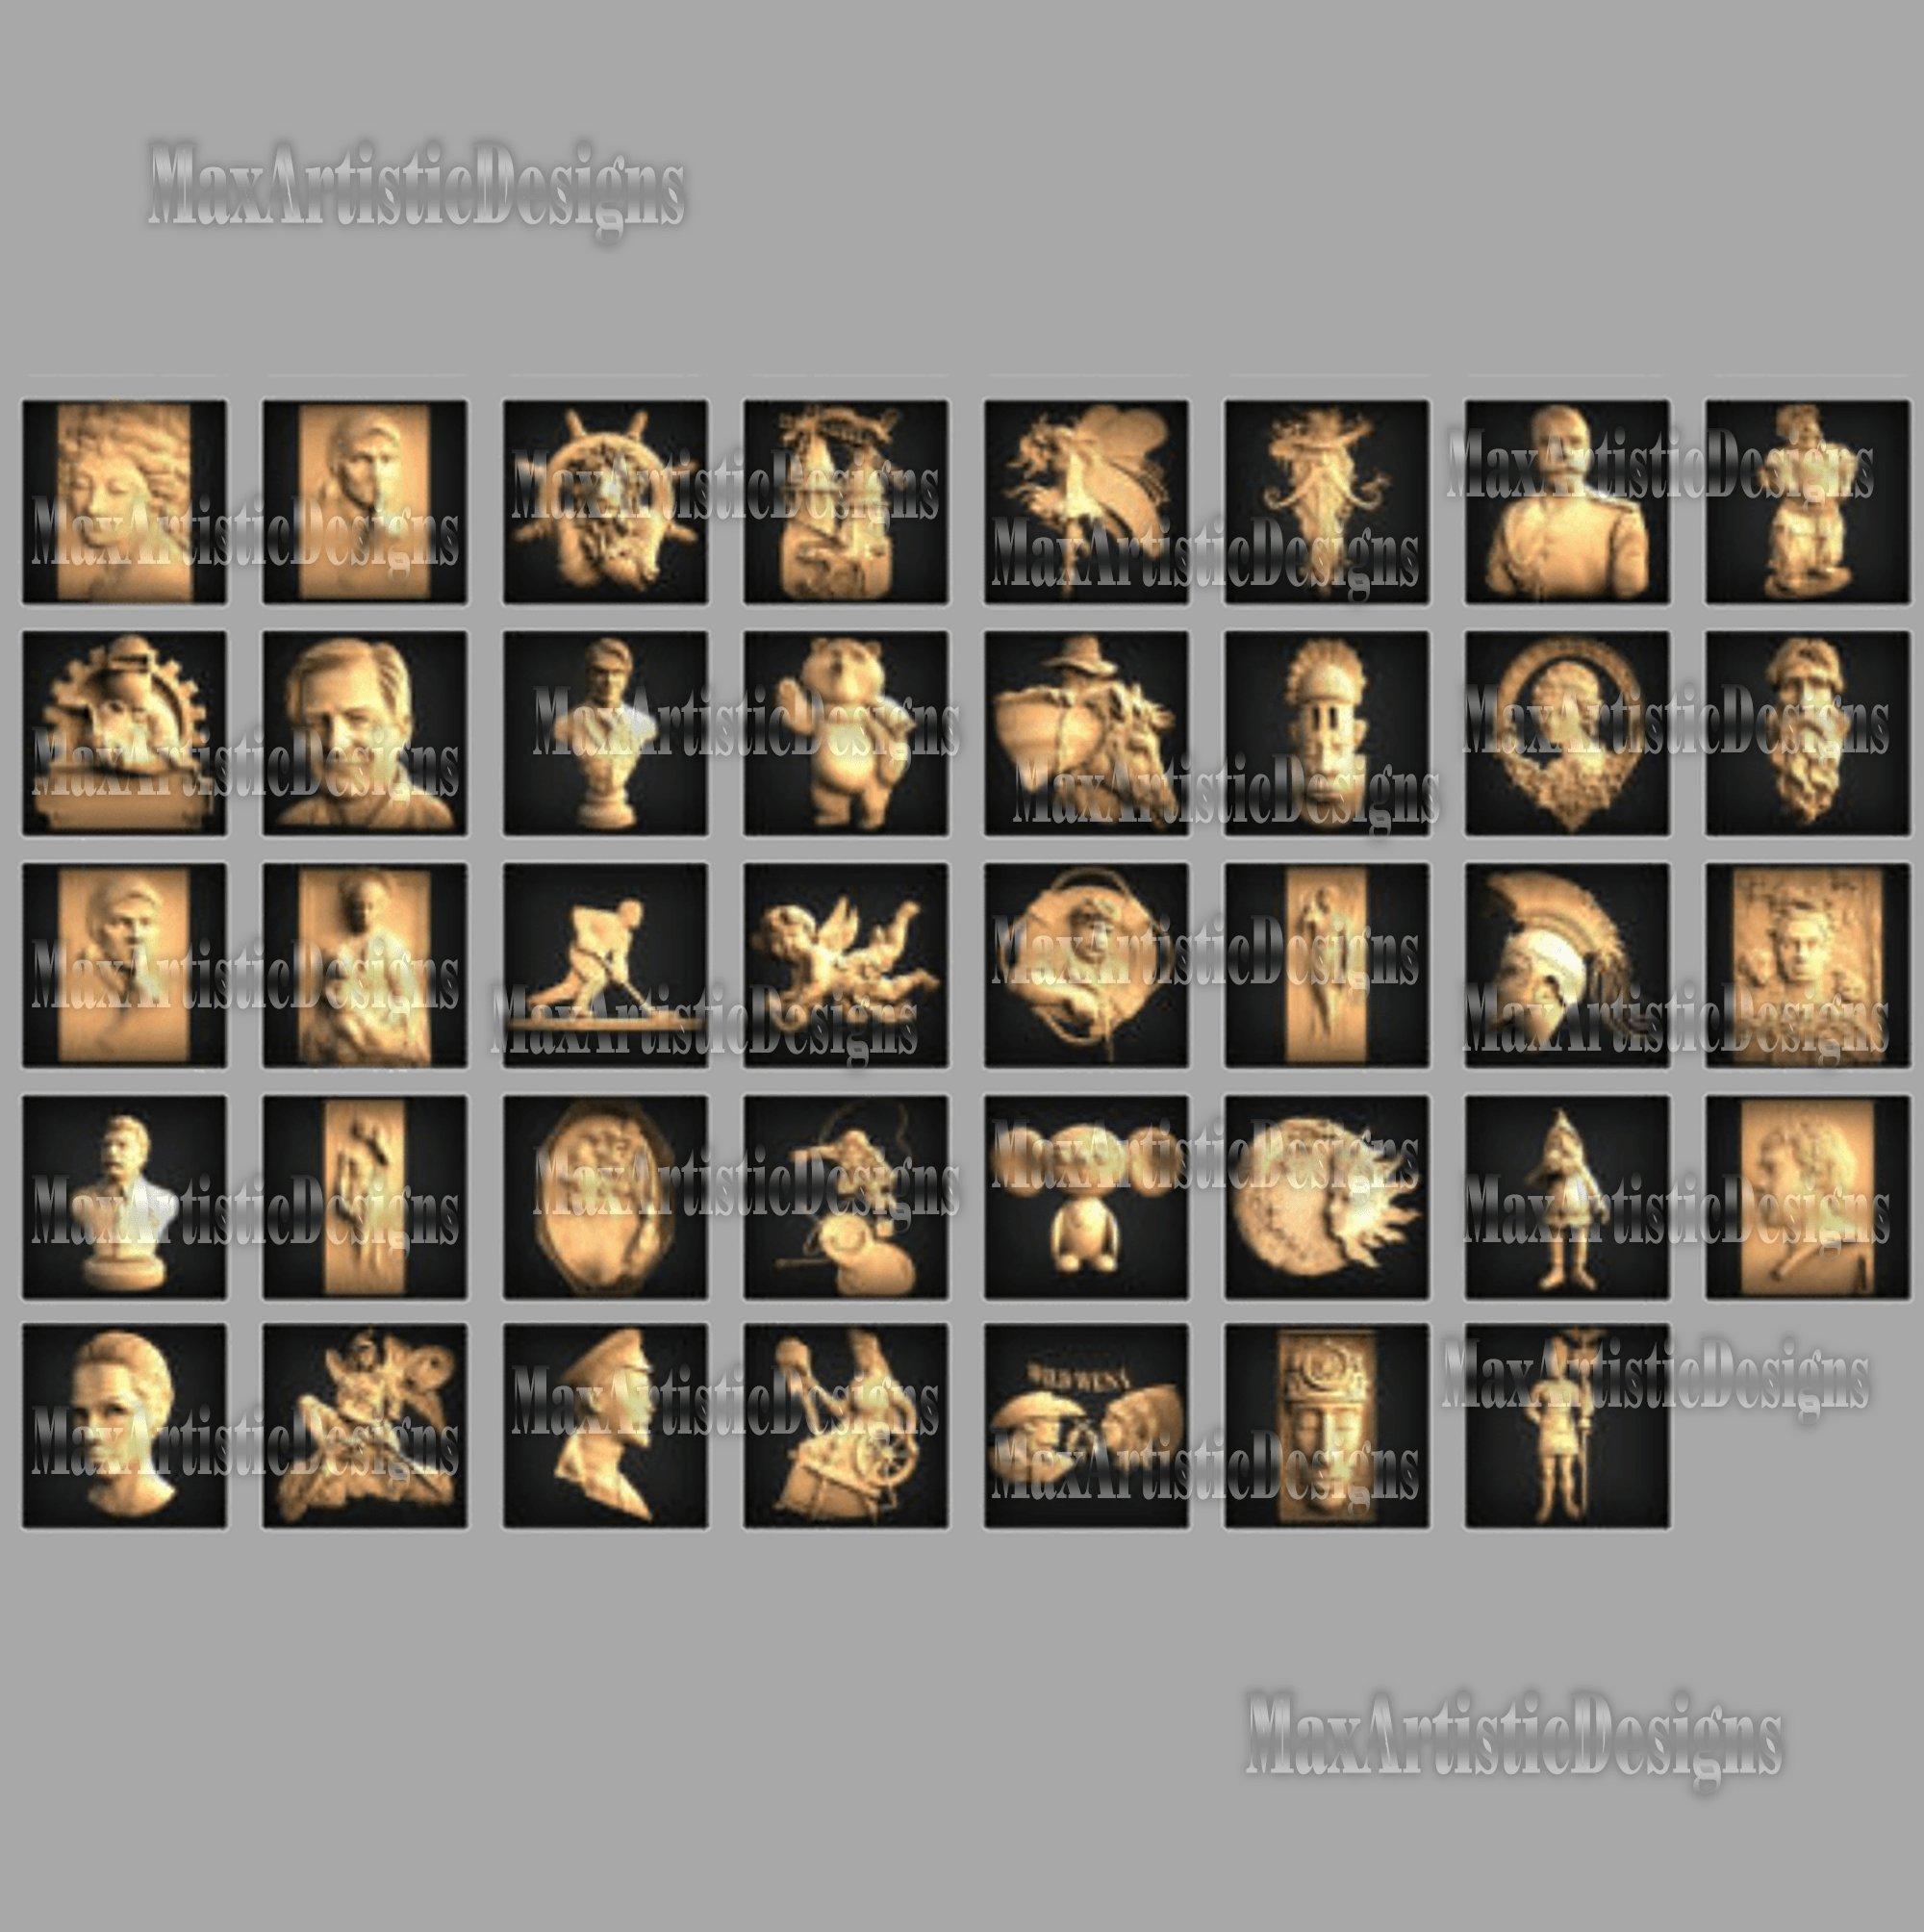 141 caras de modelos 3d stl, máscaras, personajes antiguos, archivos tallados en bajorrelieve para descarga de enrutador cnc